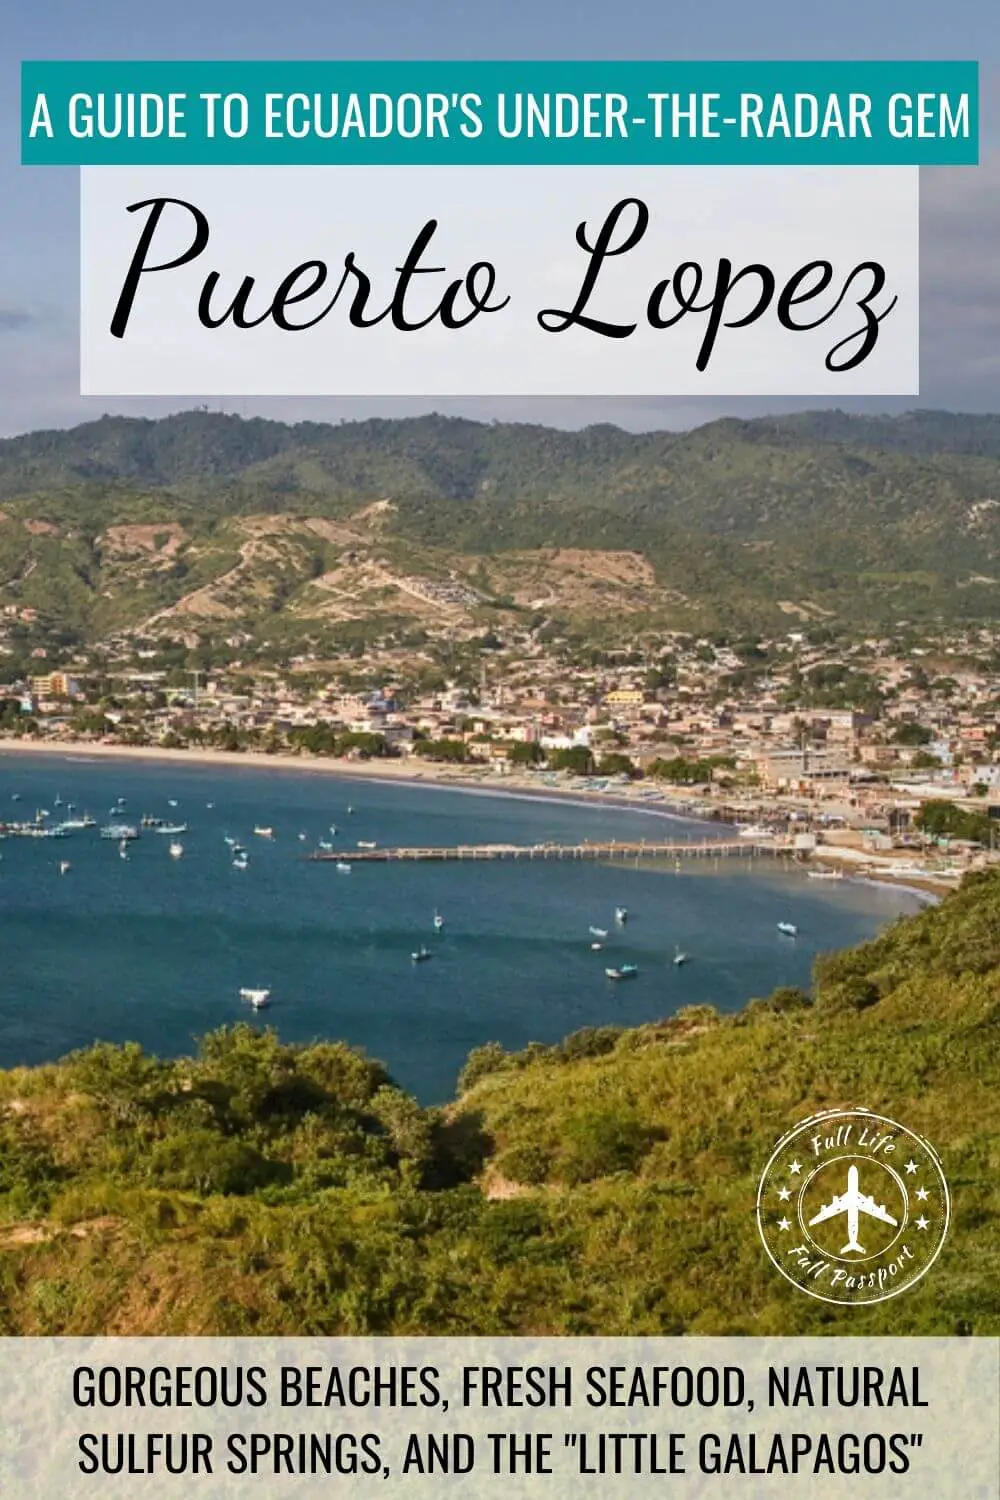 Following the Sun Route: A Guide to Puerto Lopez, Ecuador